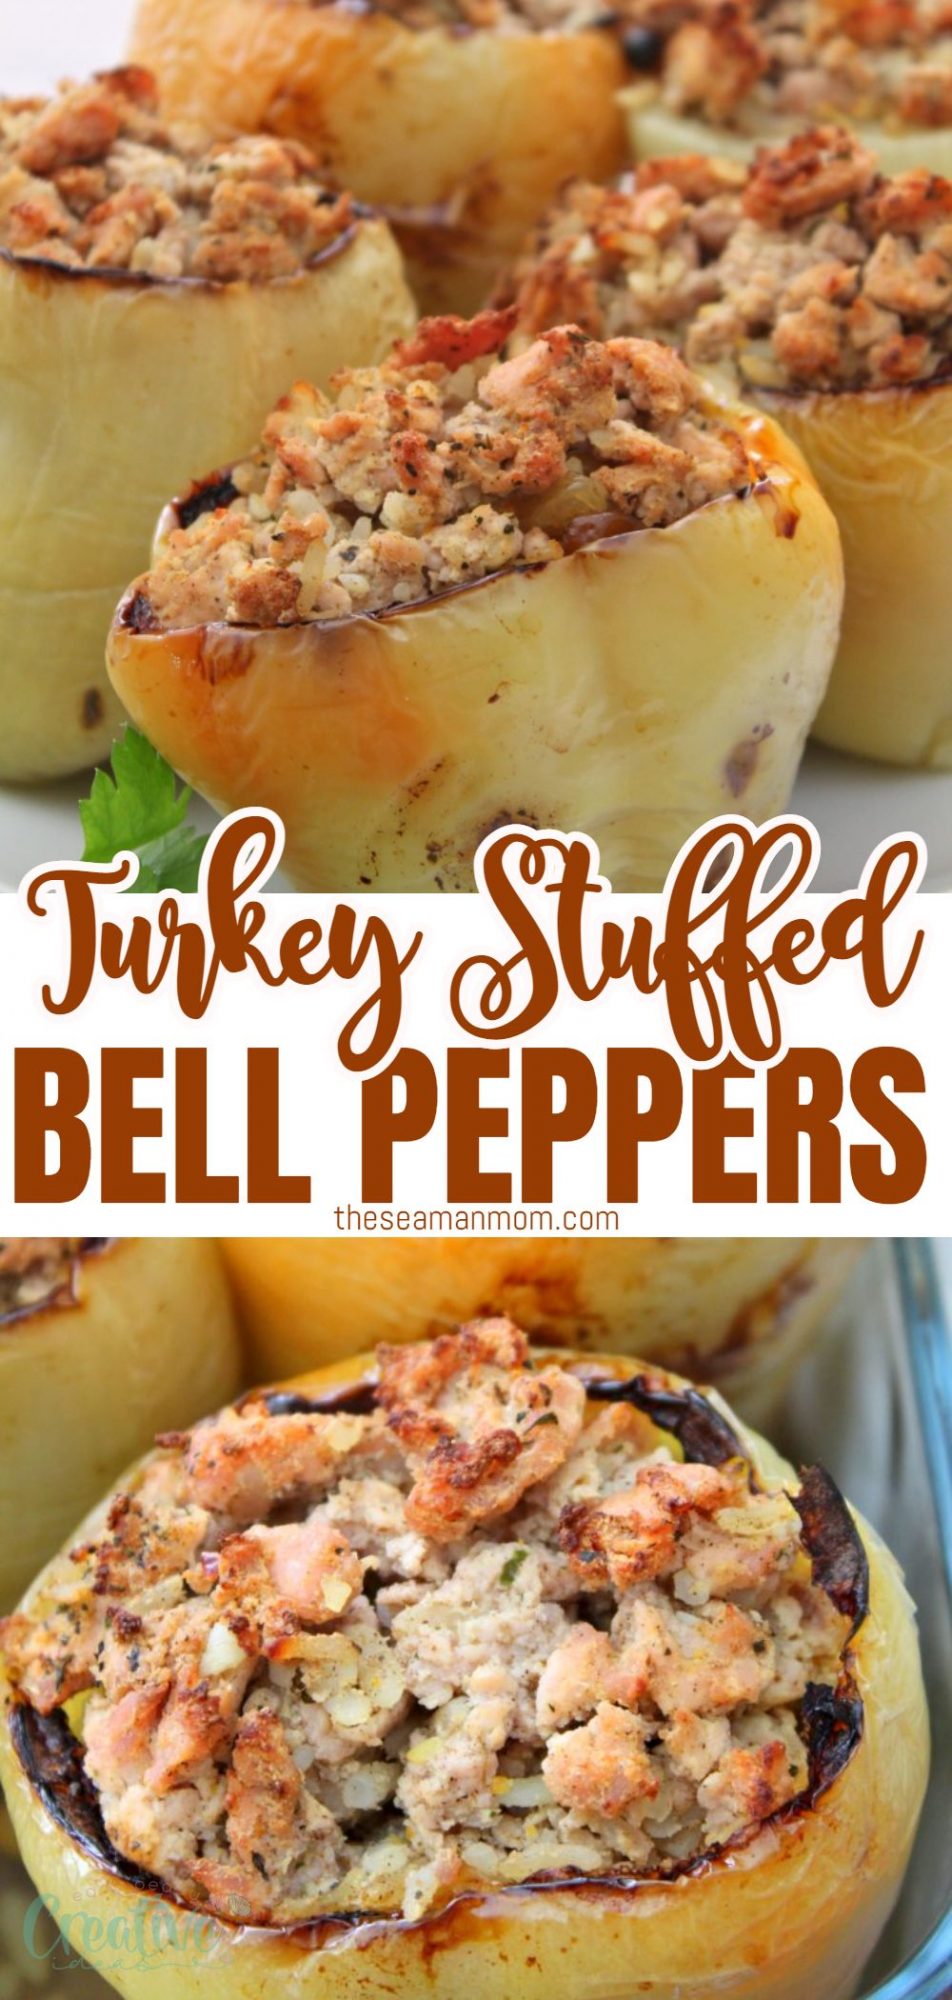 Turkey stuffed bell peppers